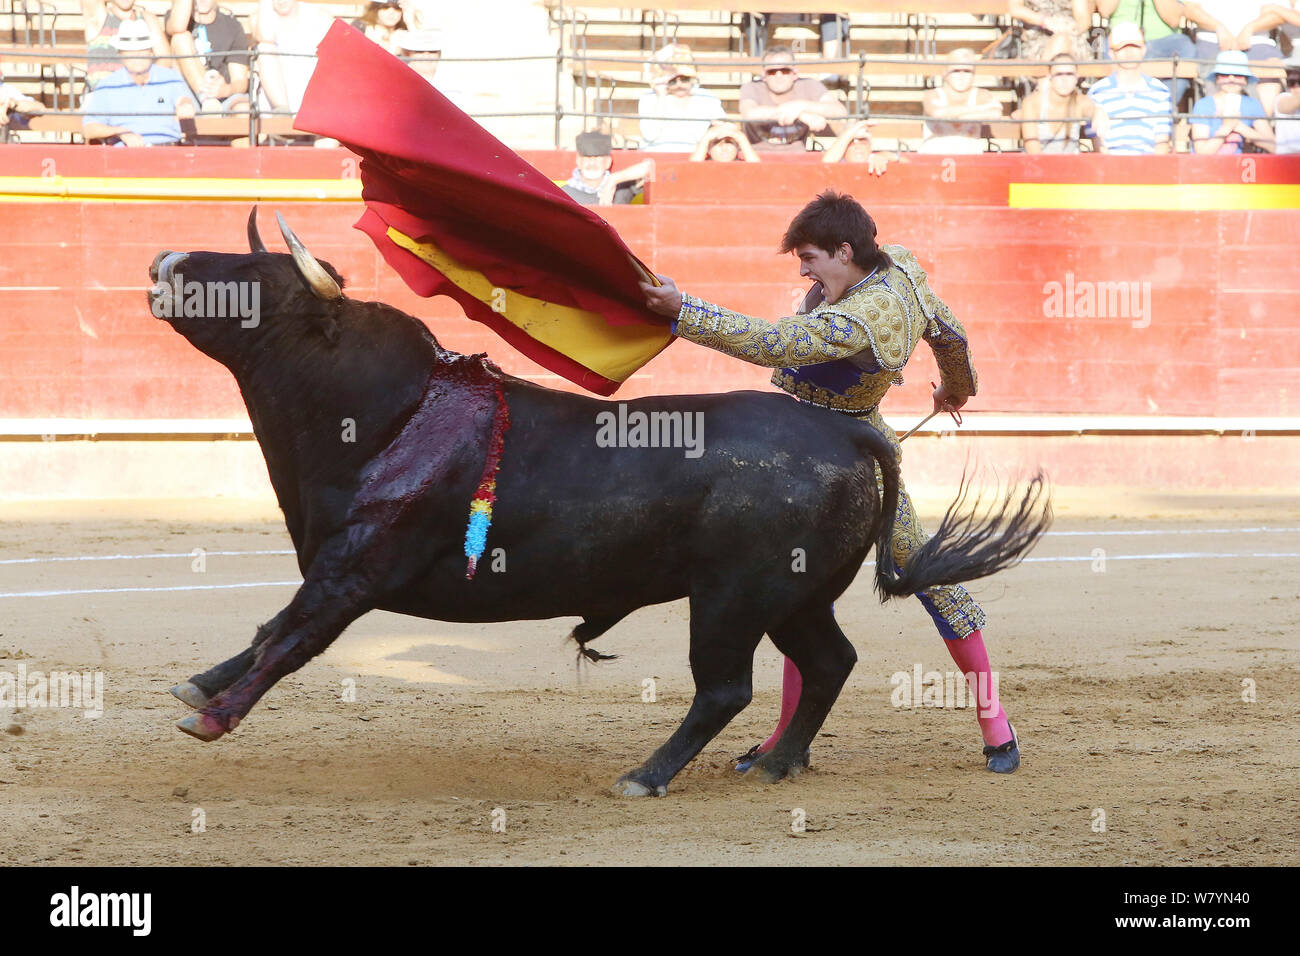 https://c8.alamy.com/compes/w7yn40/las-corridas-de-toros-toro-con-barbas-banderillas-embedded-hombro-de-tercio-de-banderillas-ronda-de-las-corridas-de-toros-la-carga-en-el-torero-plaza-de-toros-de-valencia-espana-de-julio-de-2014-w7yn40.jpg